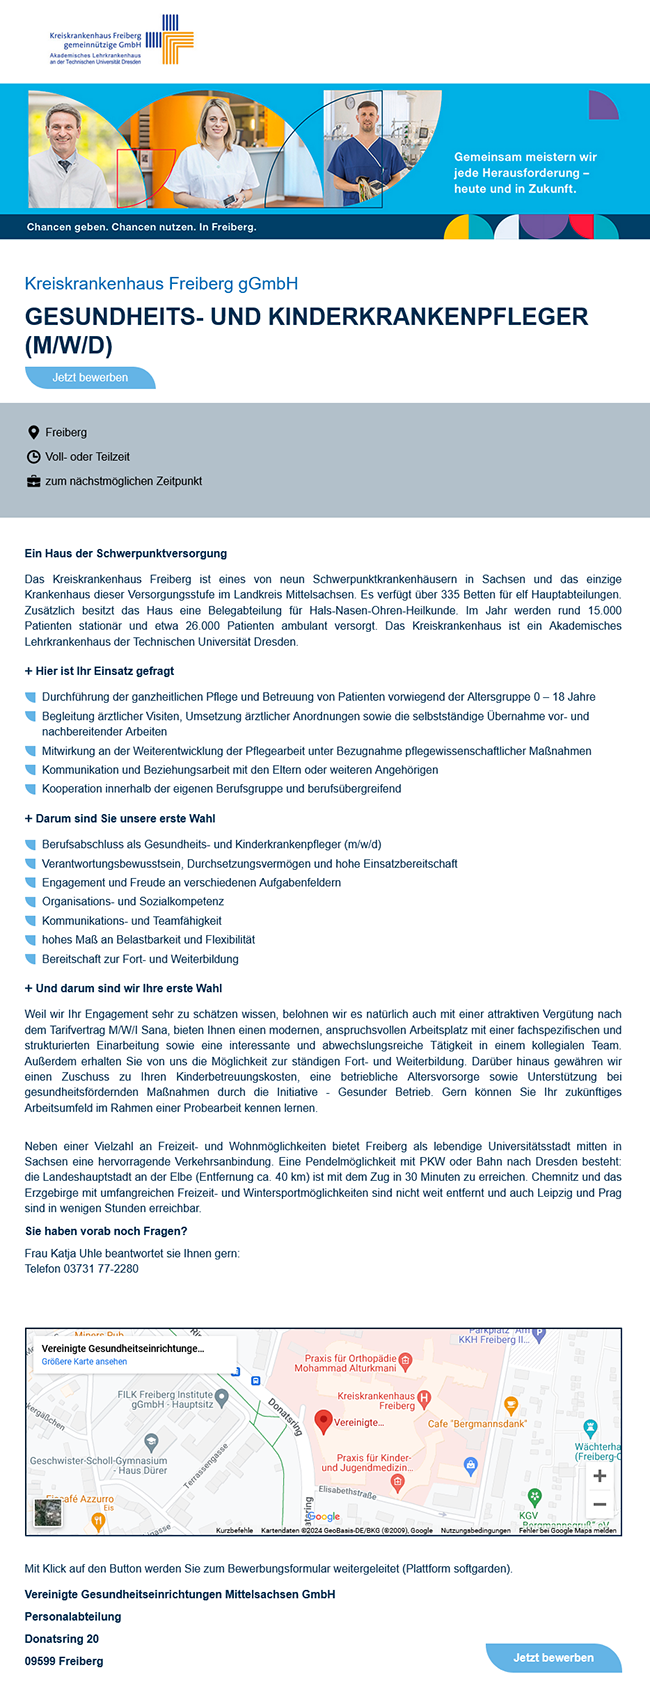 Vereinigte Gesundheitseinrichtungen Mittelsachsen GmbH Gesundheits- und Kinderkrankenpfleger Stellenausschreibung